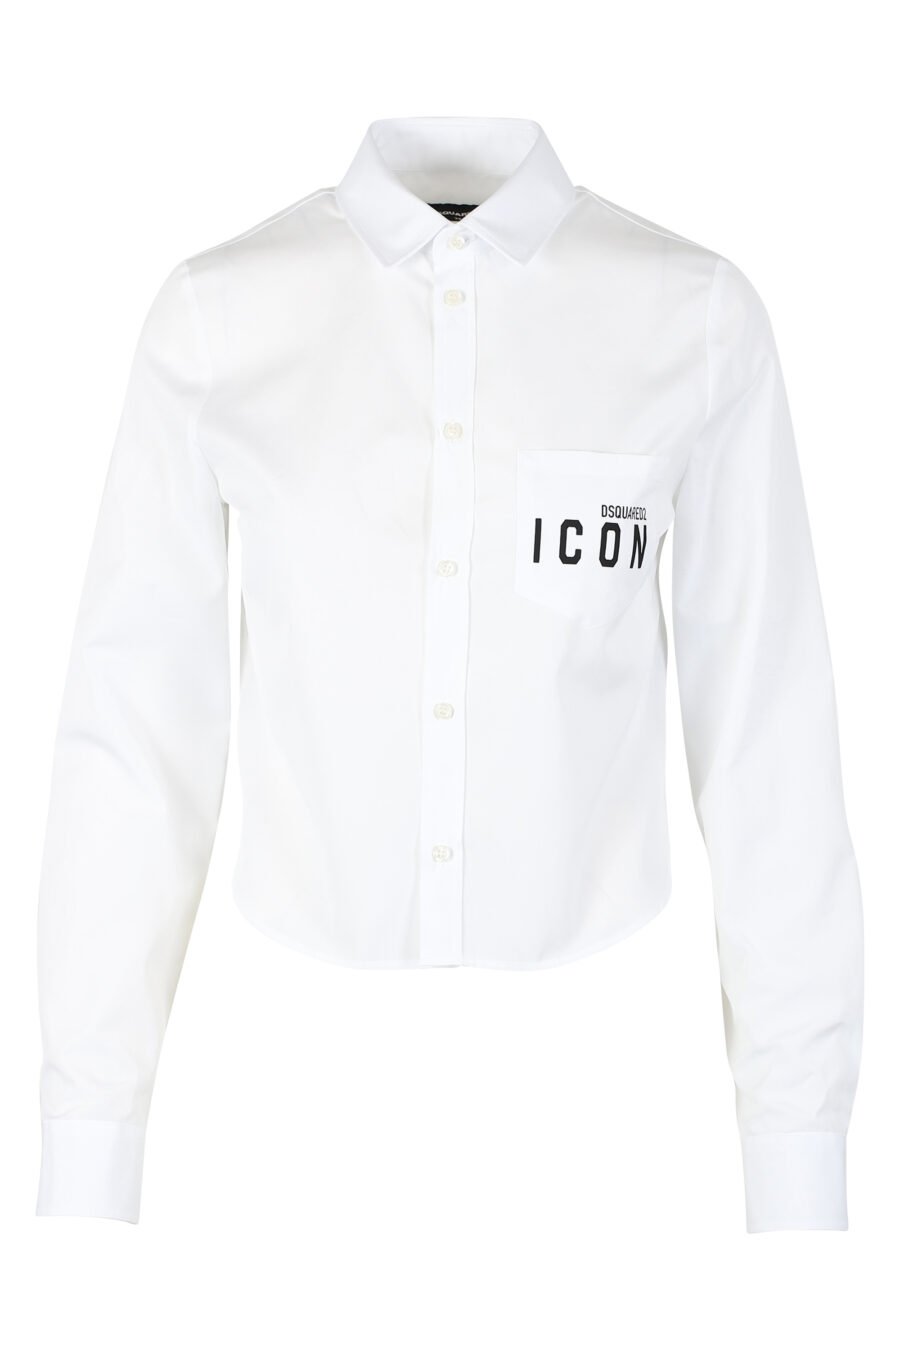 Chemise blanche courte avec double icône minilogue - IMG 9793